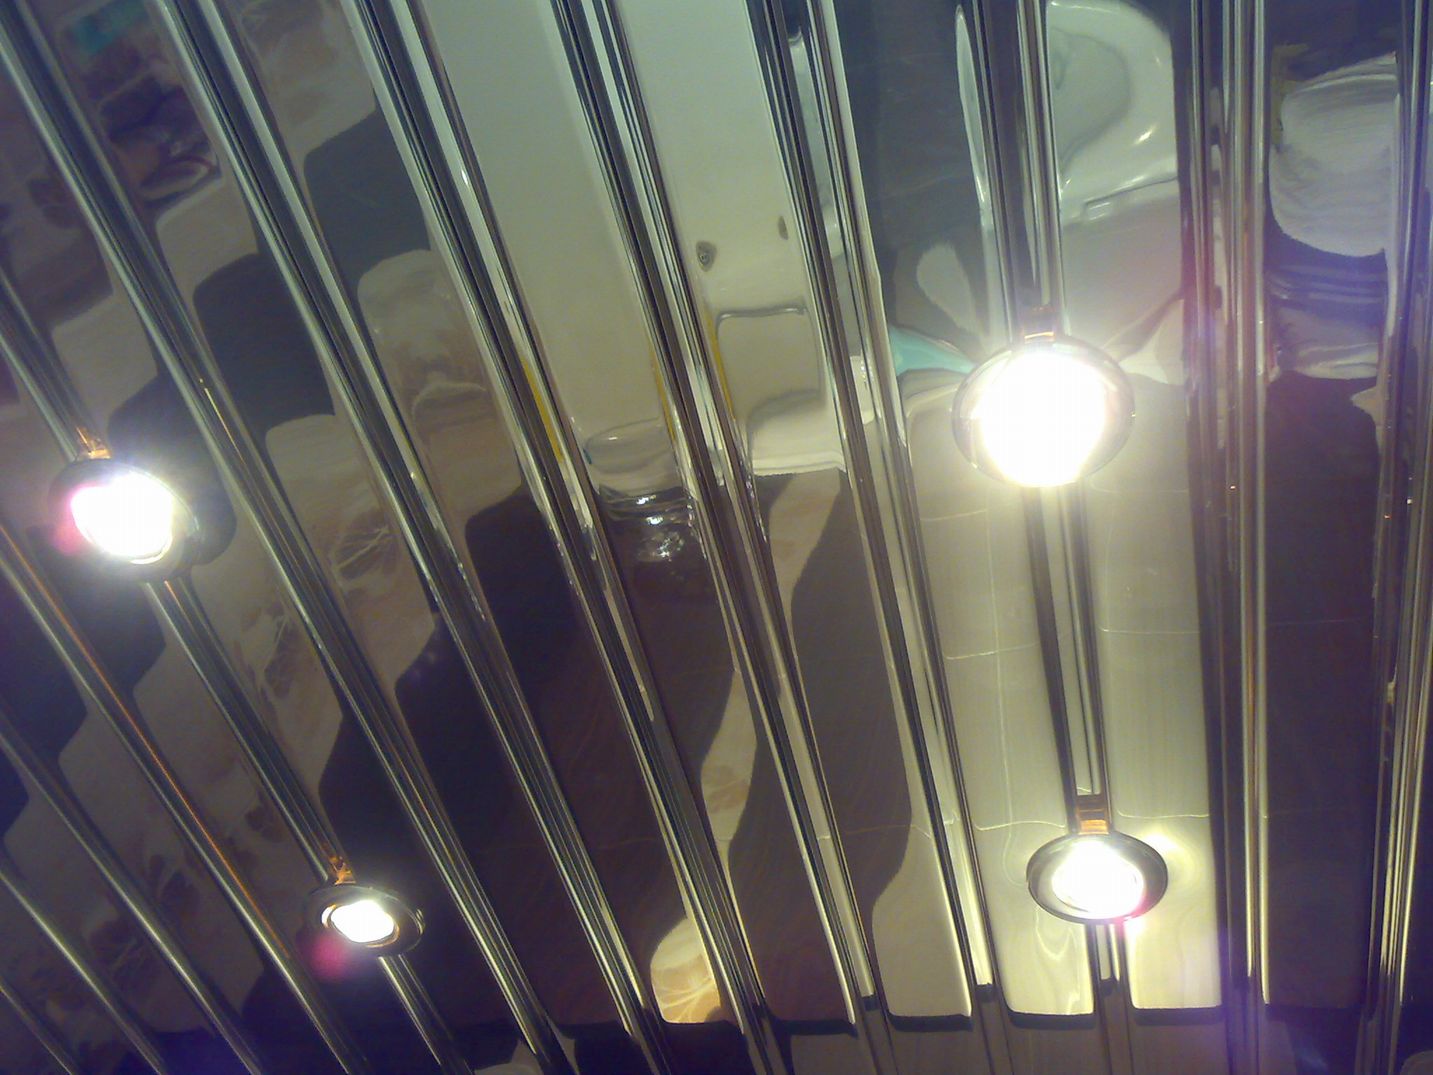 Реечный потолок со светильниками